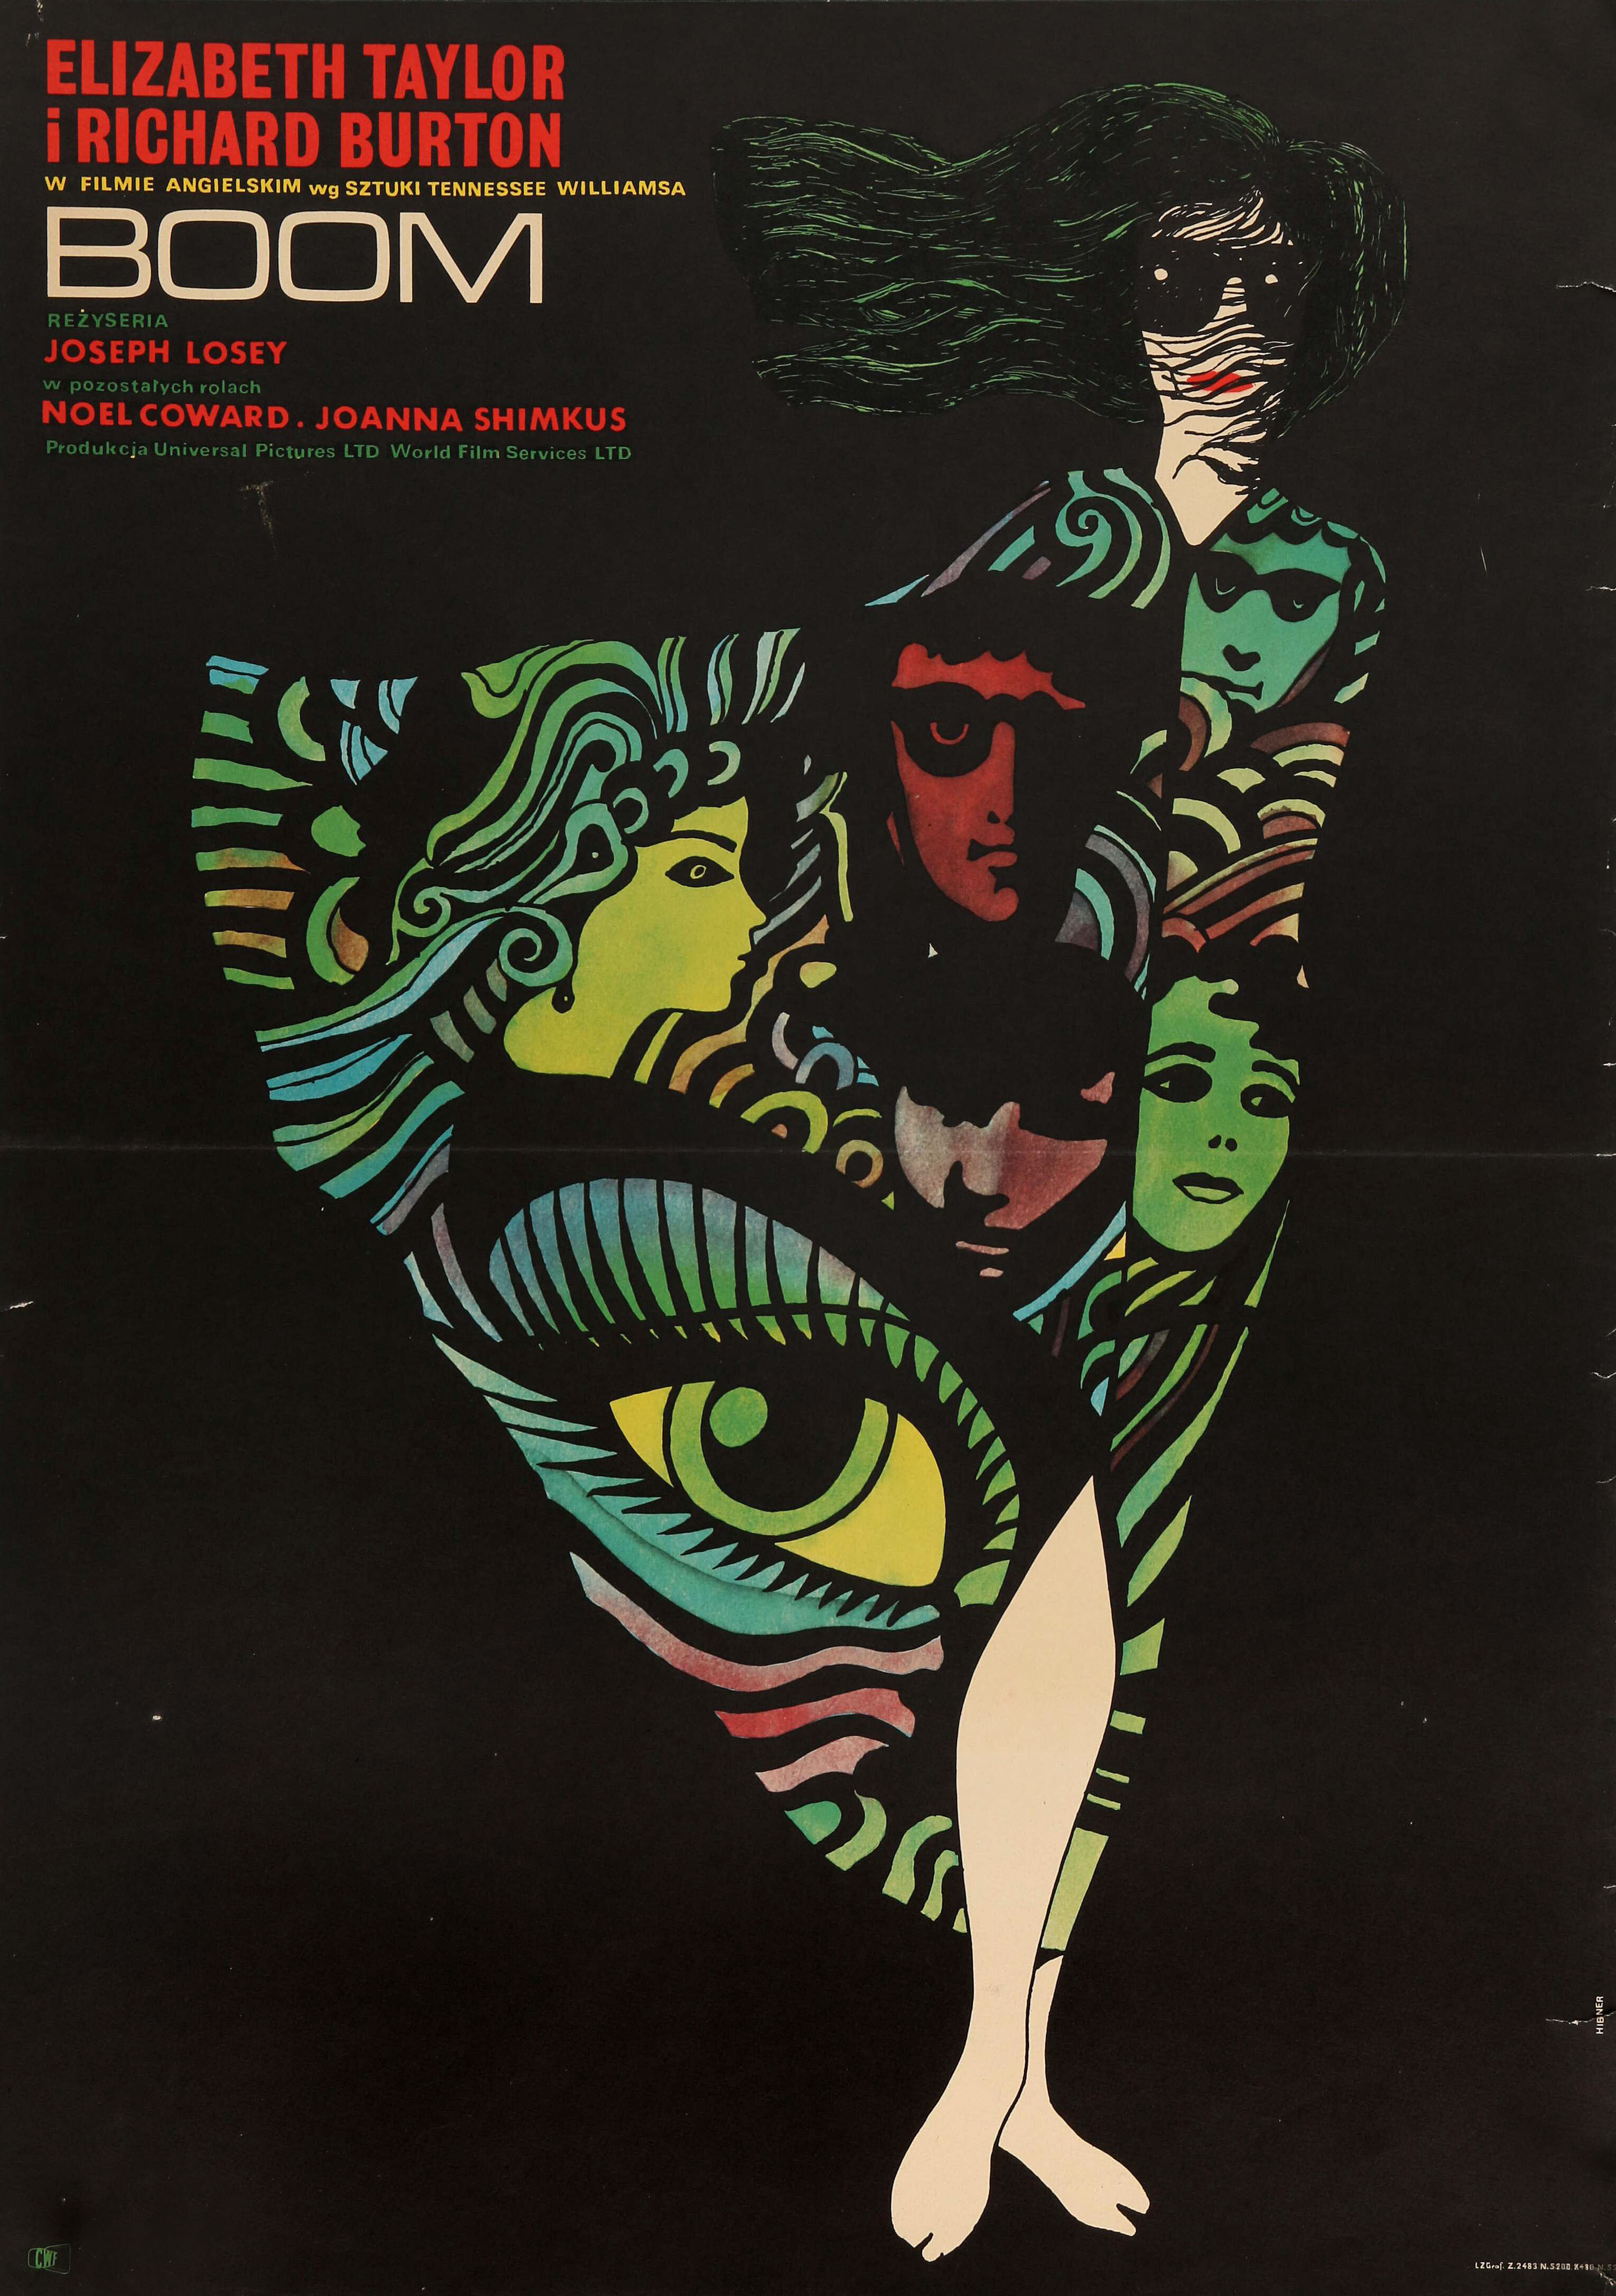 Бум (Boom!, 1968), режиссёр Джозеф Лоузи, польский постер к фильму, художник Мацей Хибнер (психоделическое искусство, 1970 год)